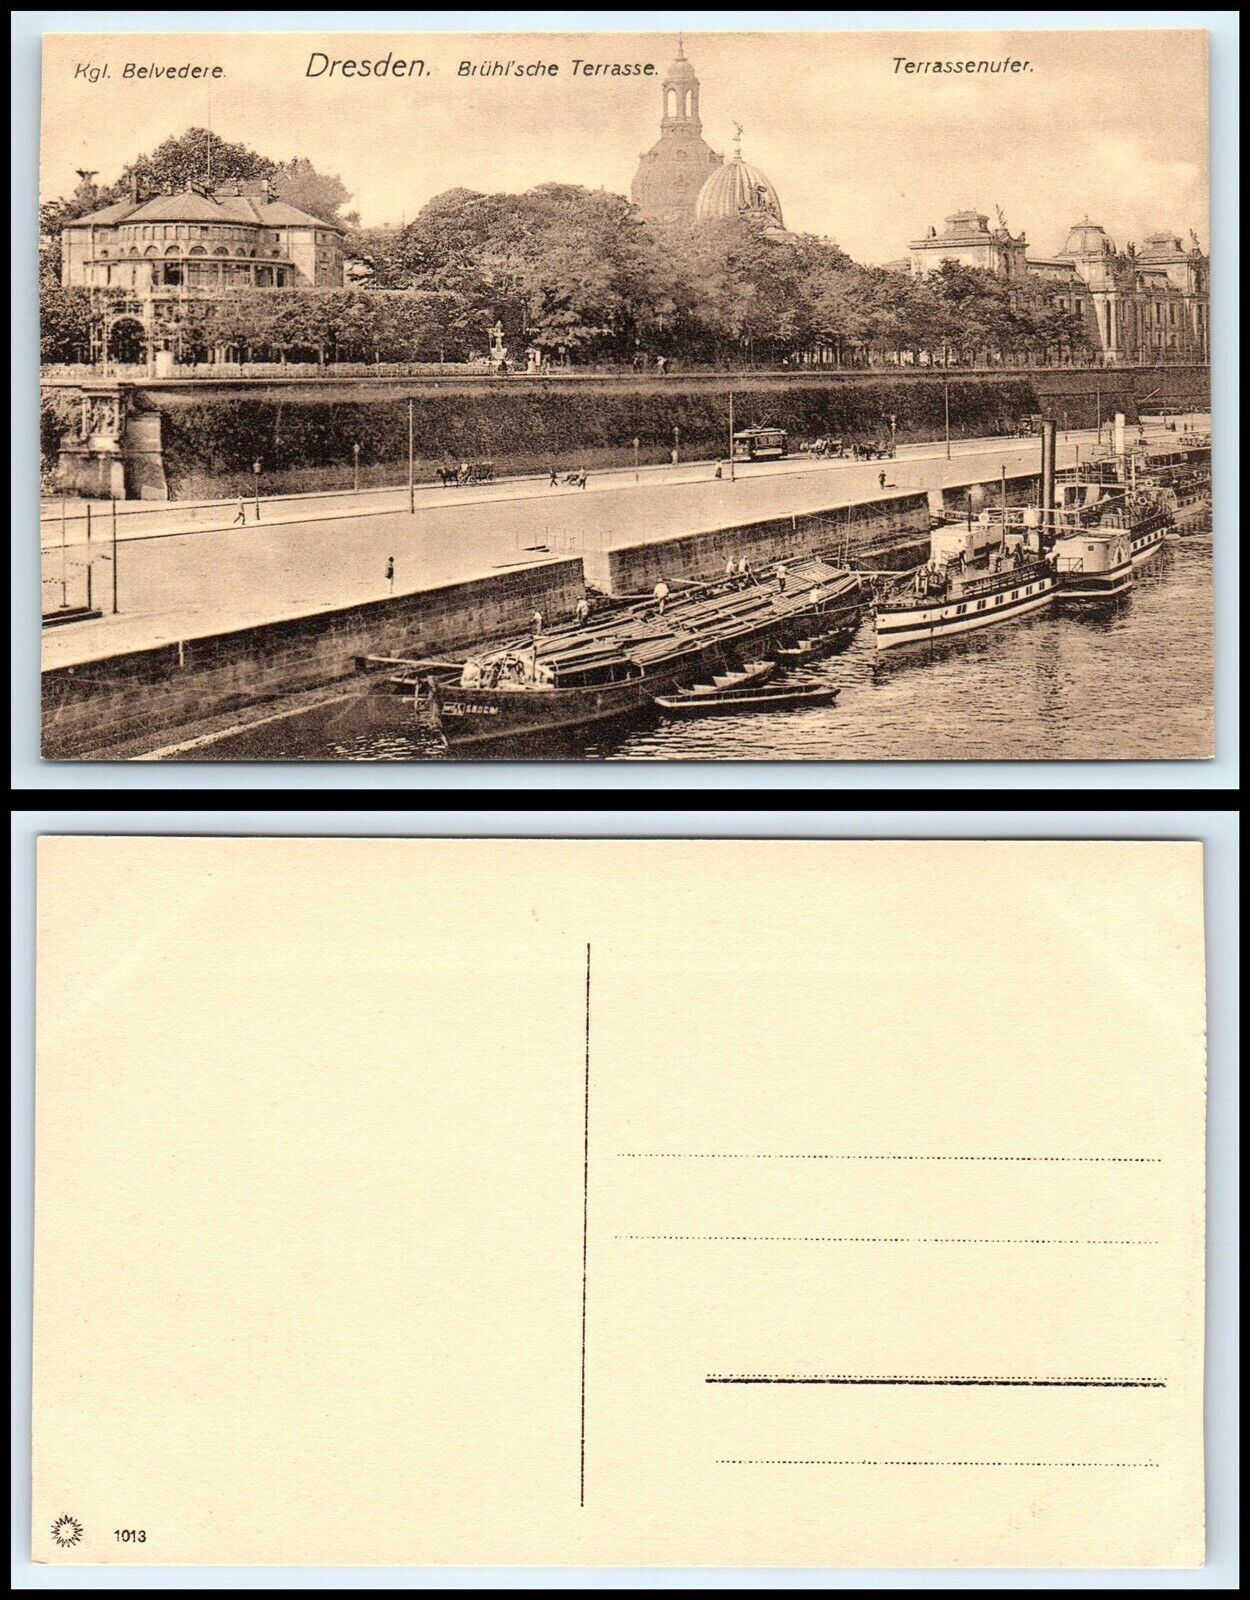 GERMANY Postcard - Dresden, Belvedere, Bruhl\'sche Terrasse, Terrassenufer F17